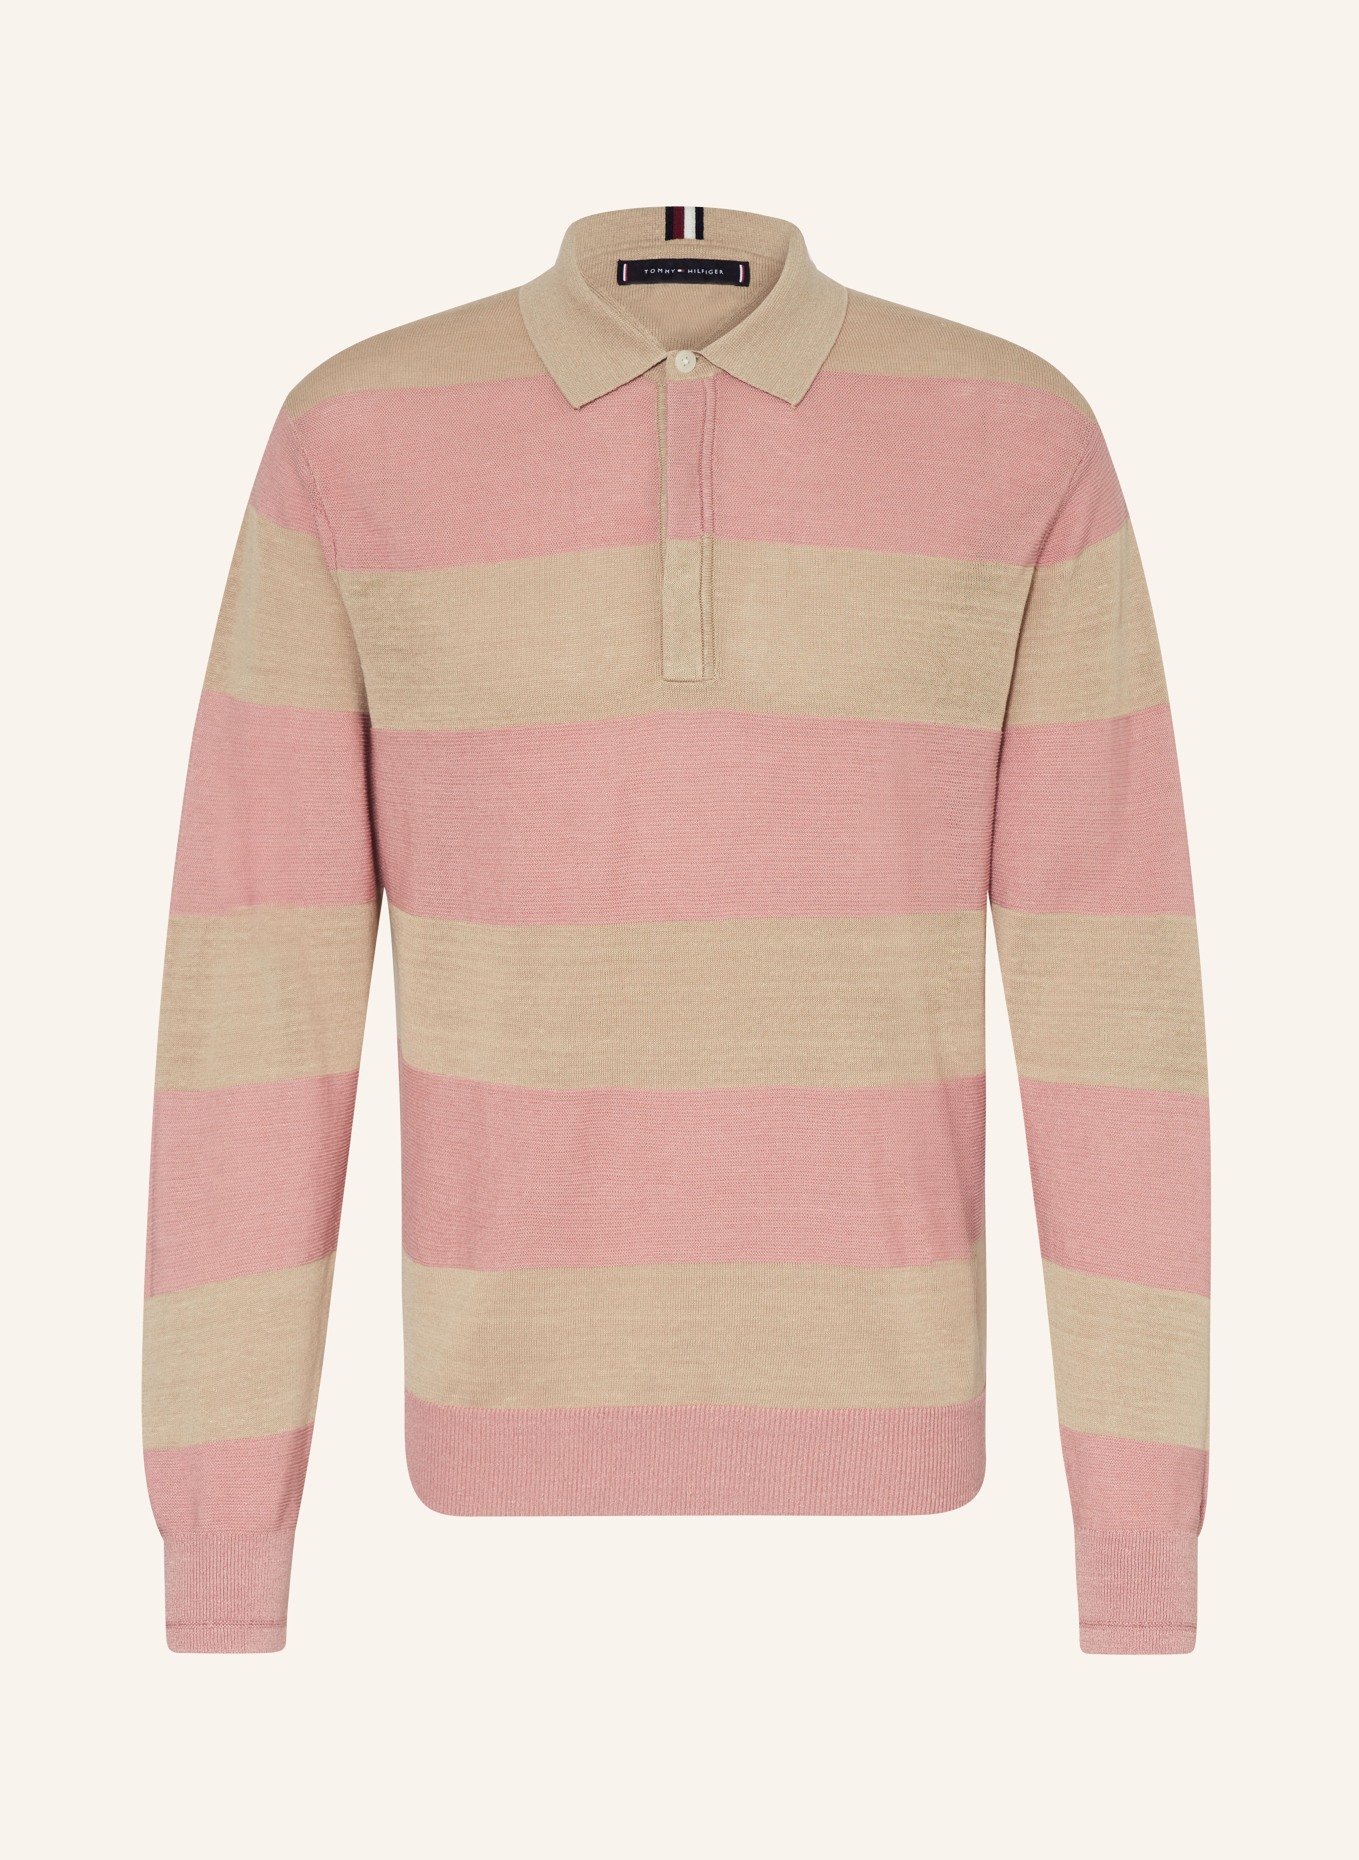 TOMMY HILFIGER Strick-Poloshirt mit Leinen, Farbe: BEIGE/ PINK (Bild 1)